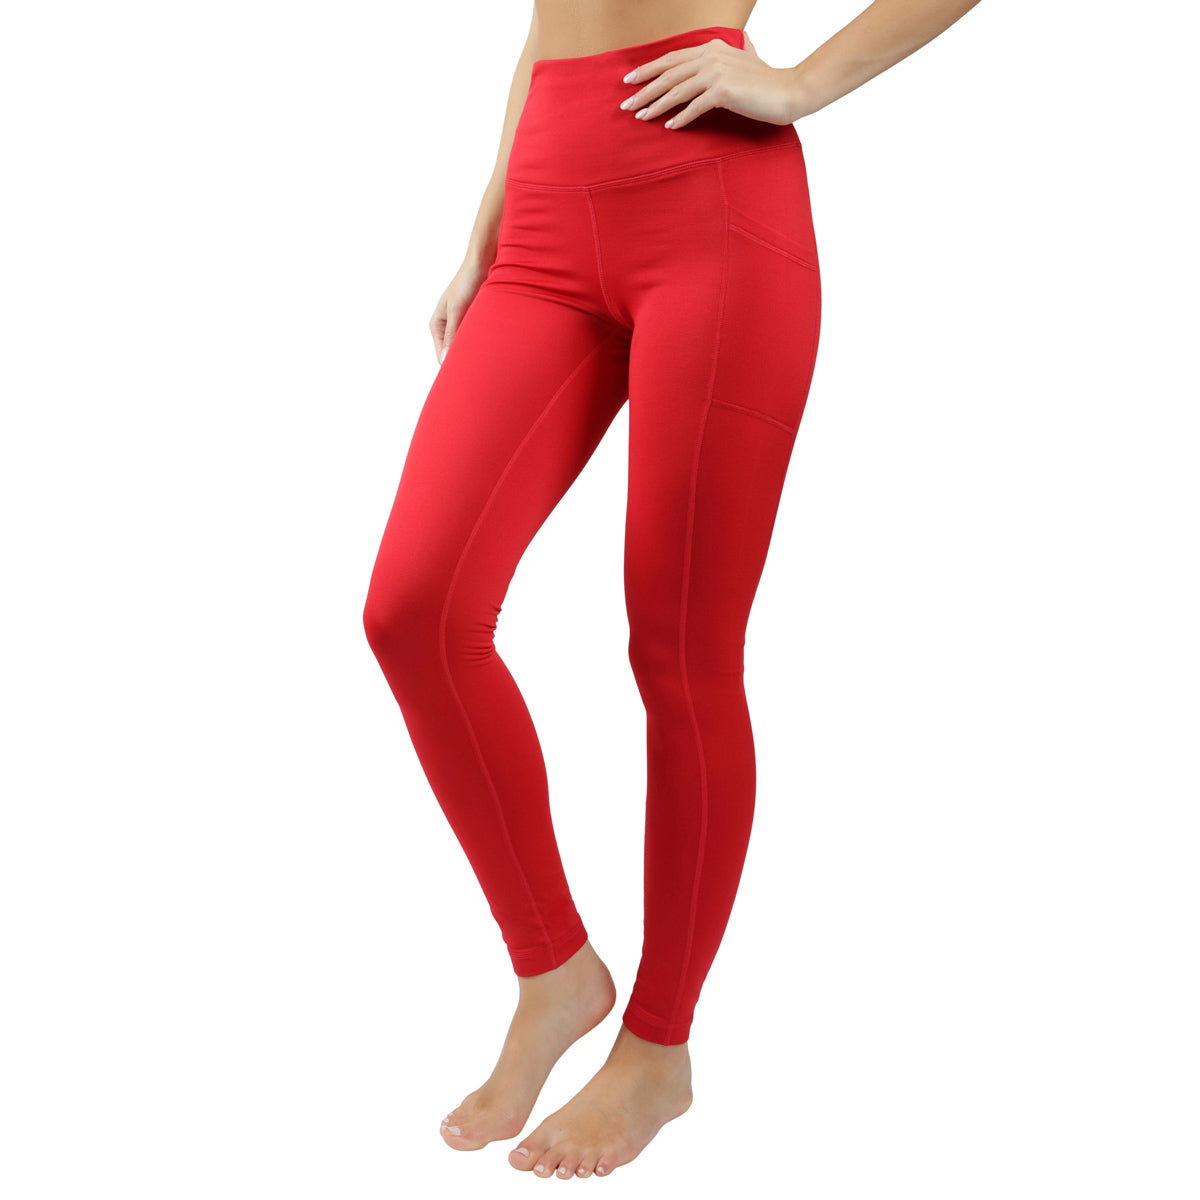 90 Degree By Reflex - Women's Polarflex Fleece Lined High Waist Legging -  Earthen Red - Small : Target